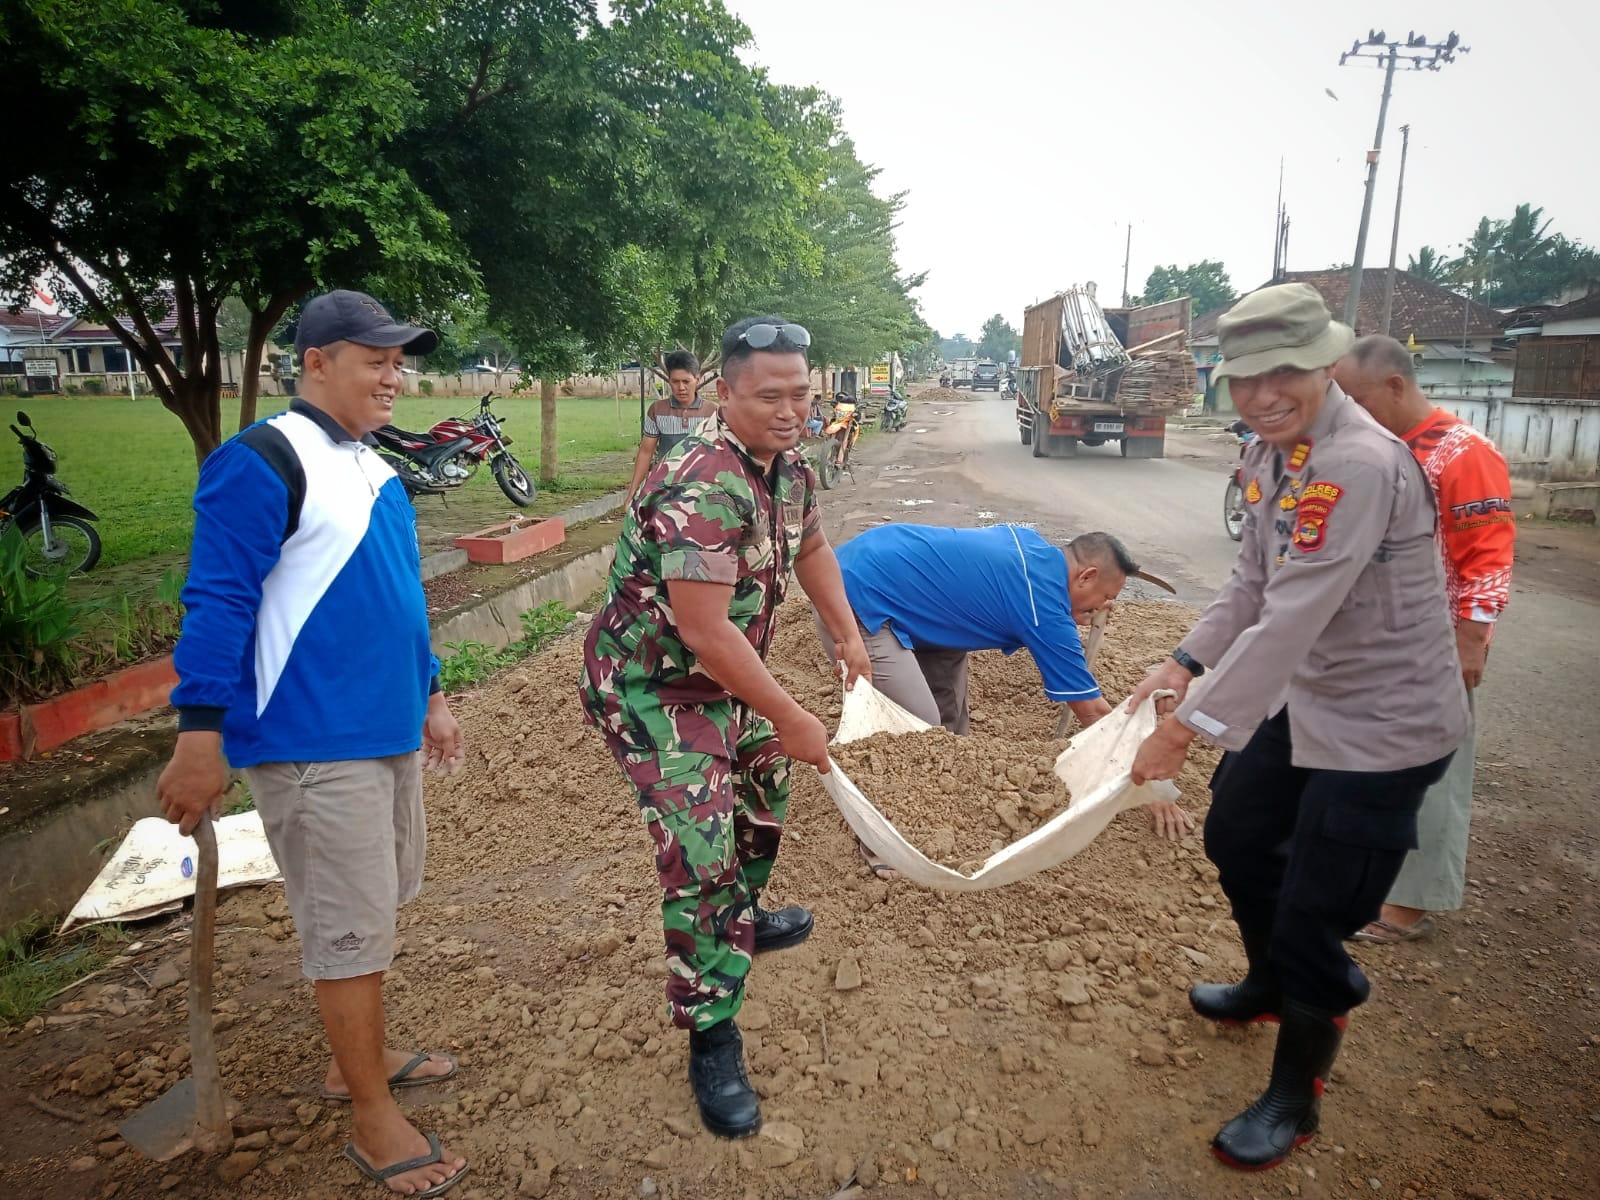 Kapolsek Bangun Rejo AKP Ferryantoni Bersama TNI Membantu Masyarakat Memperbaiki Jalan Rusak, Dimana Pejabat Pemerintah Setempat ?